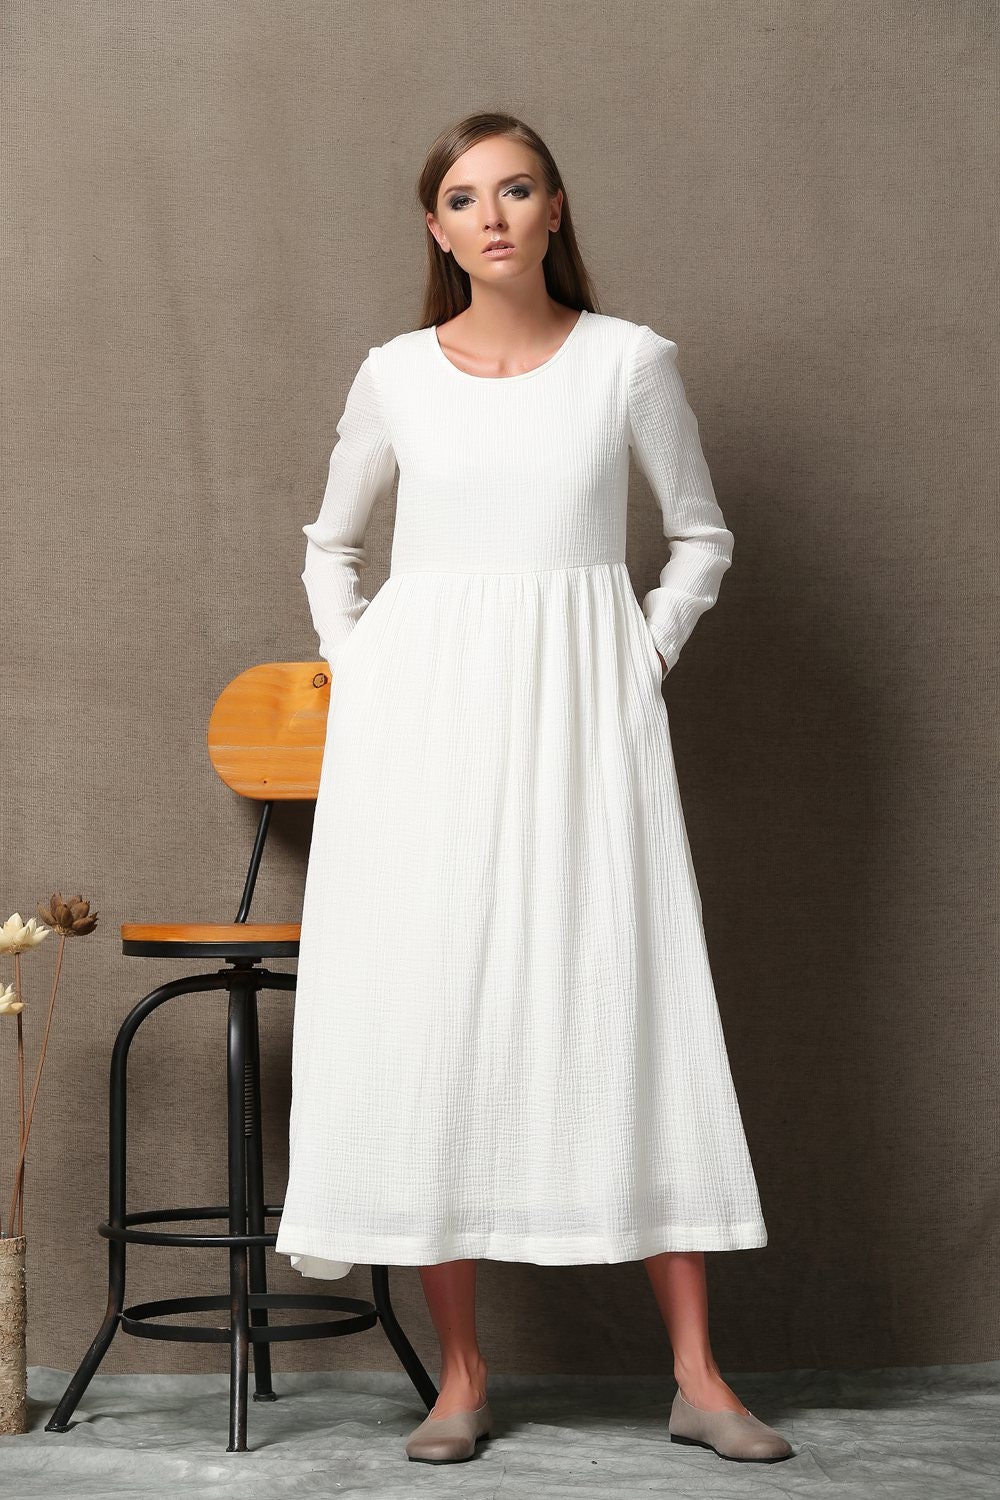 White linen dress linen dress white dress long sleeved | Etsy